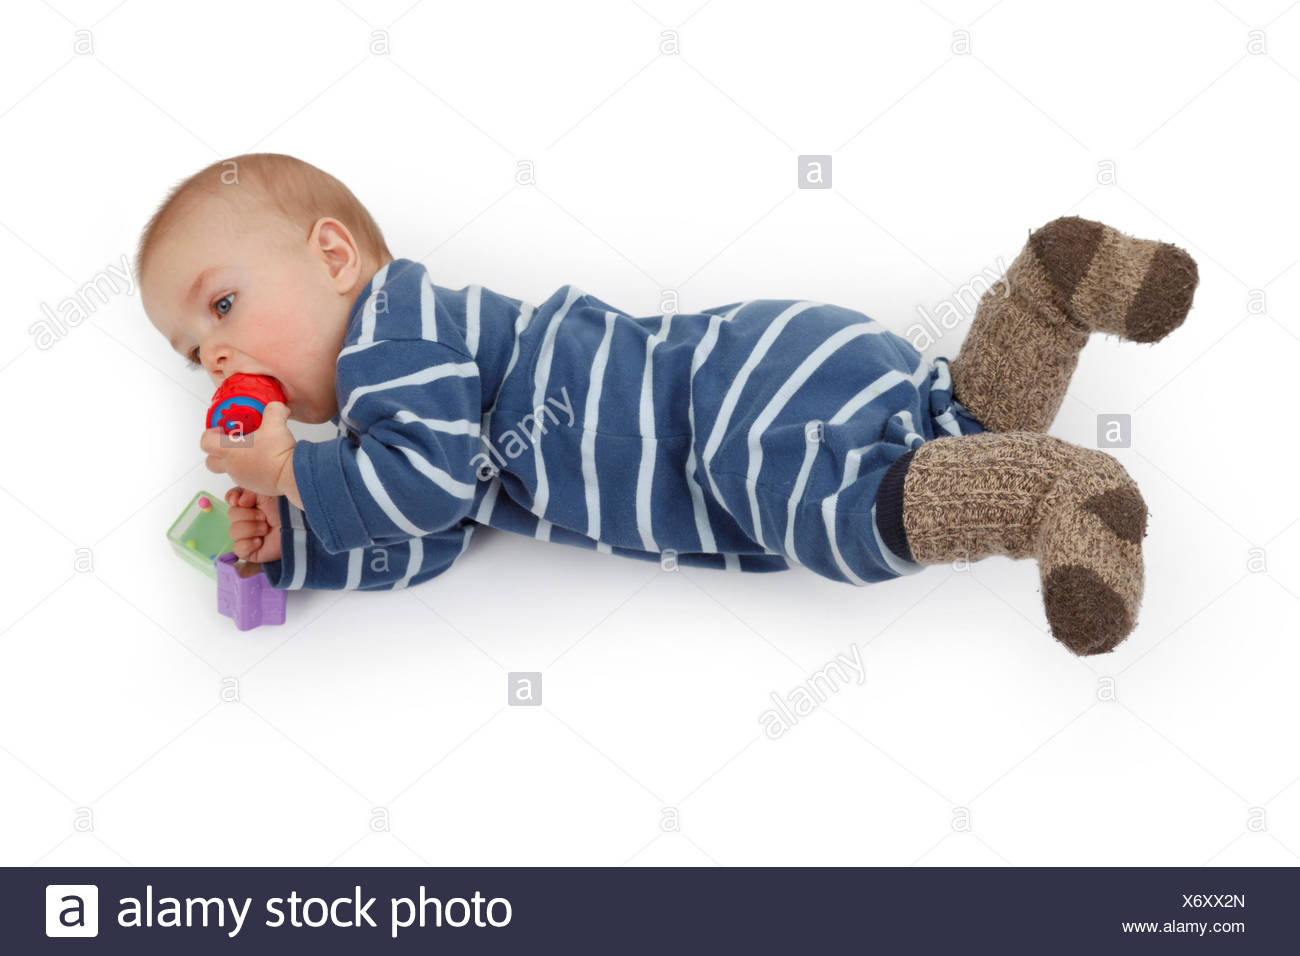 Kleines Kind Im Strampler Auf Dem Boden Liegen Und Spielen Mit Baby Spielzeug Stockfotografie Alamy